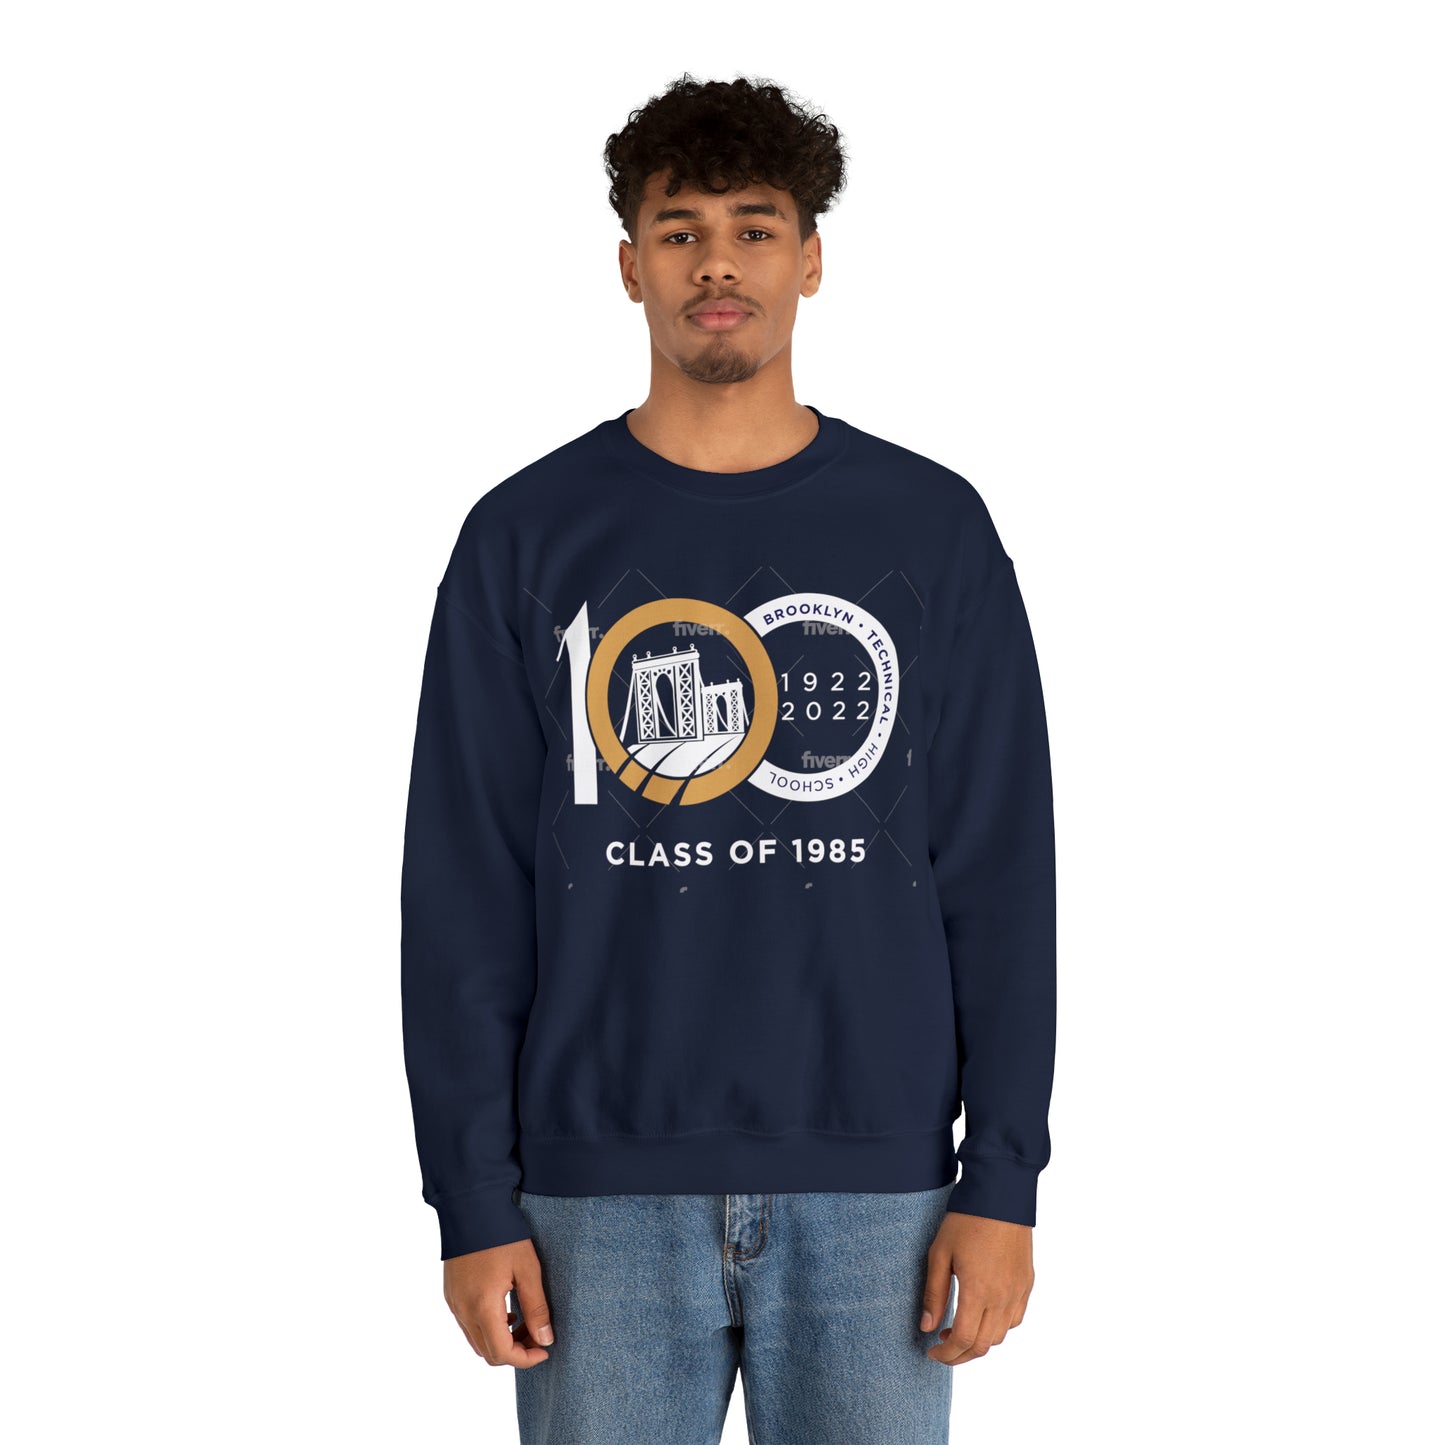 Centennial - Men's Heavy Blend Crewneck Sweatshirt - Class Of 1985